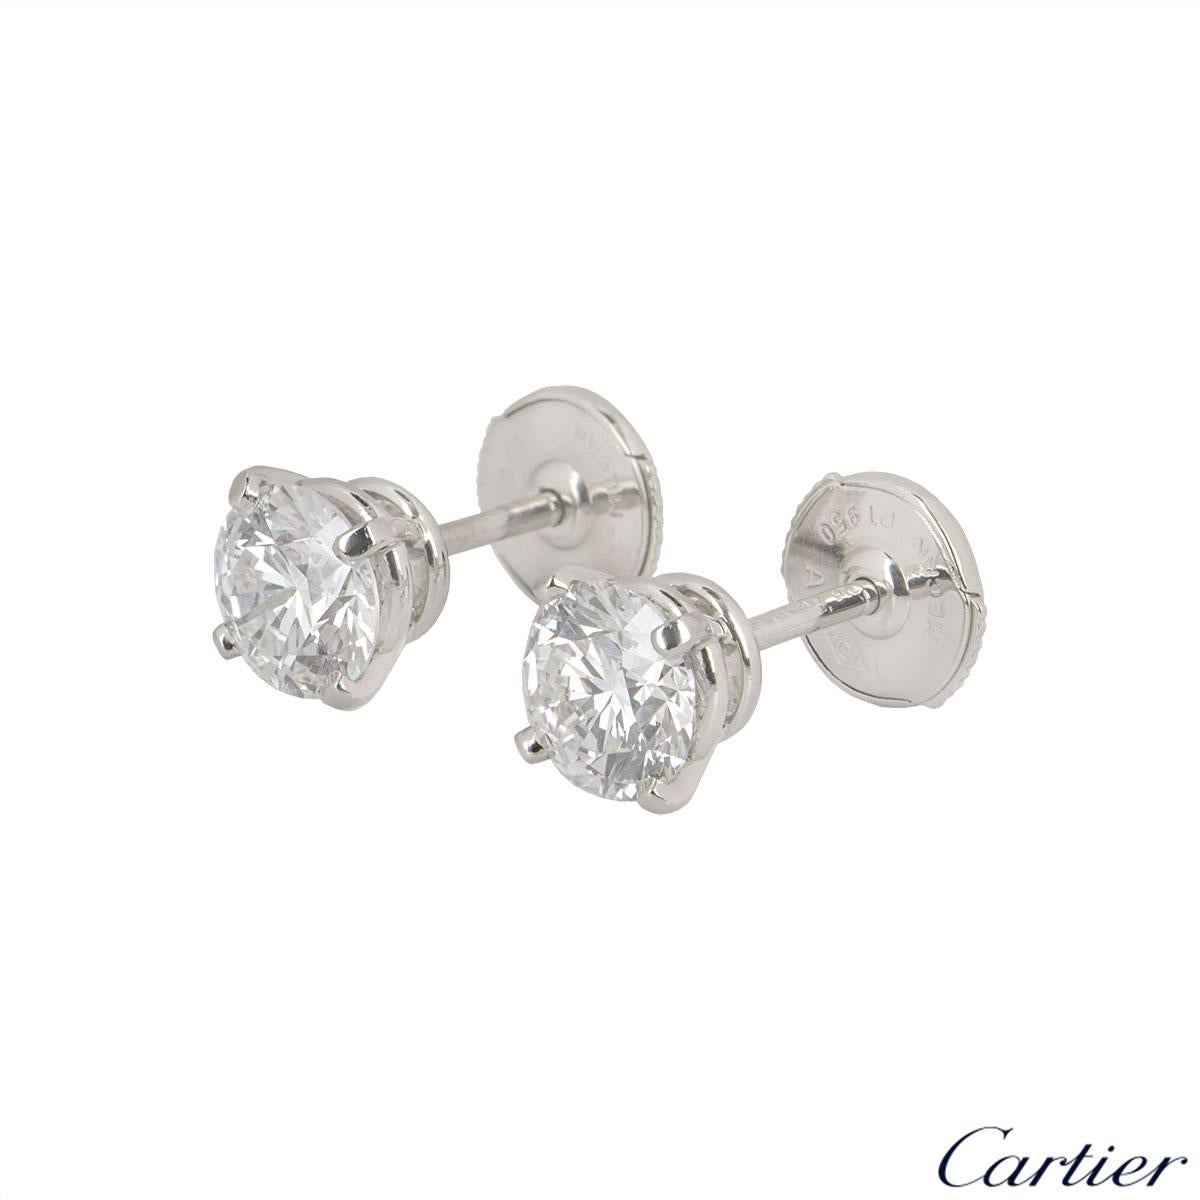 cartier diamond stud earrings price